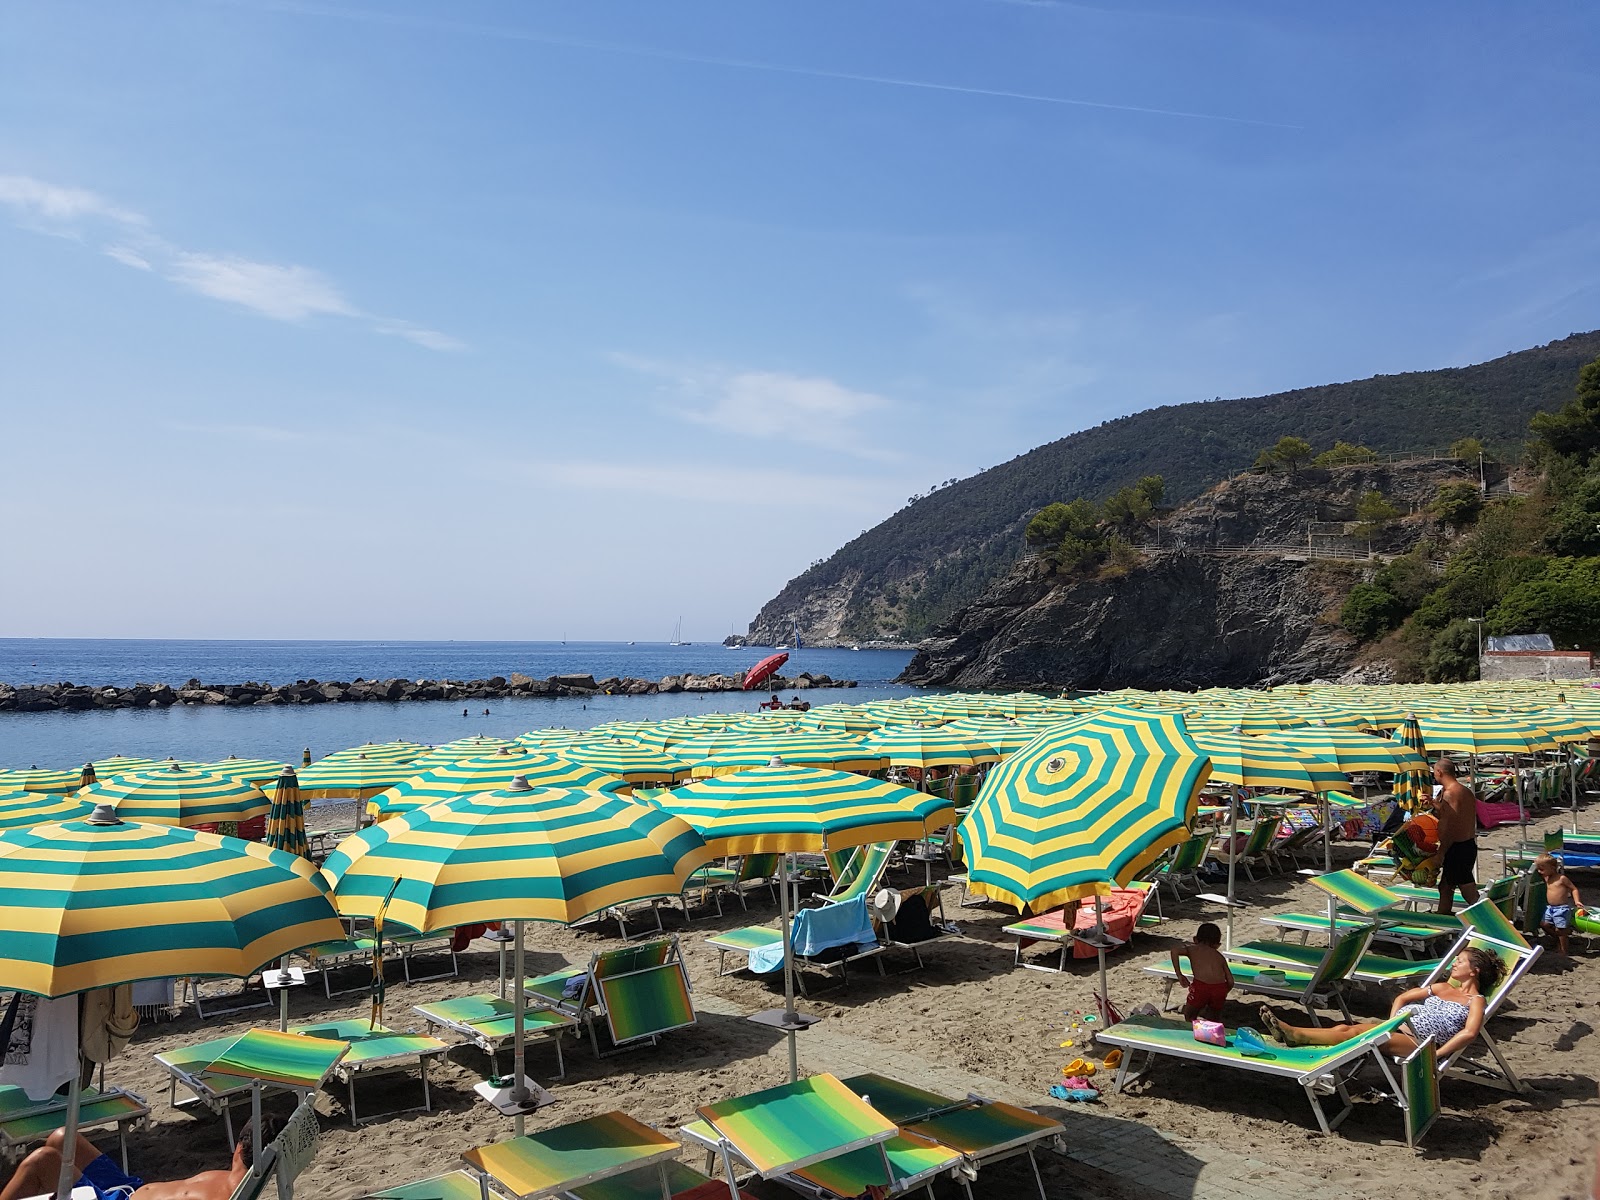 Foto de Spiaggia Moneglia - lugar popular entre los conocedores del relax